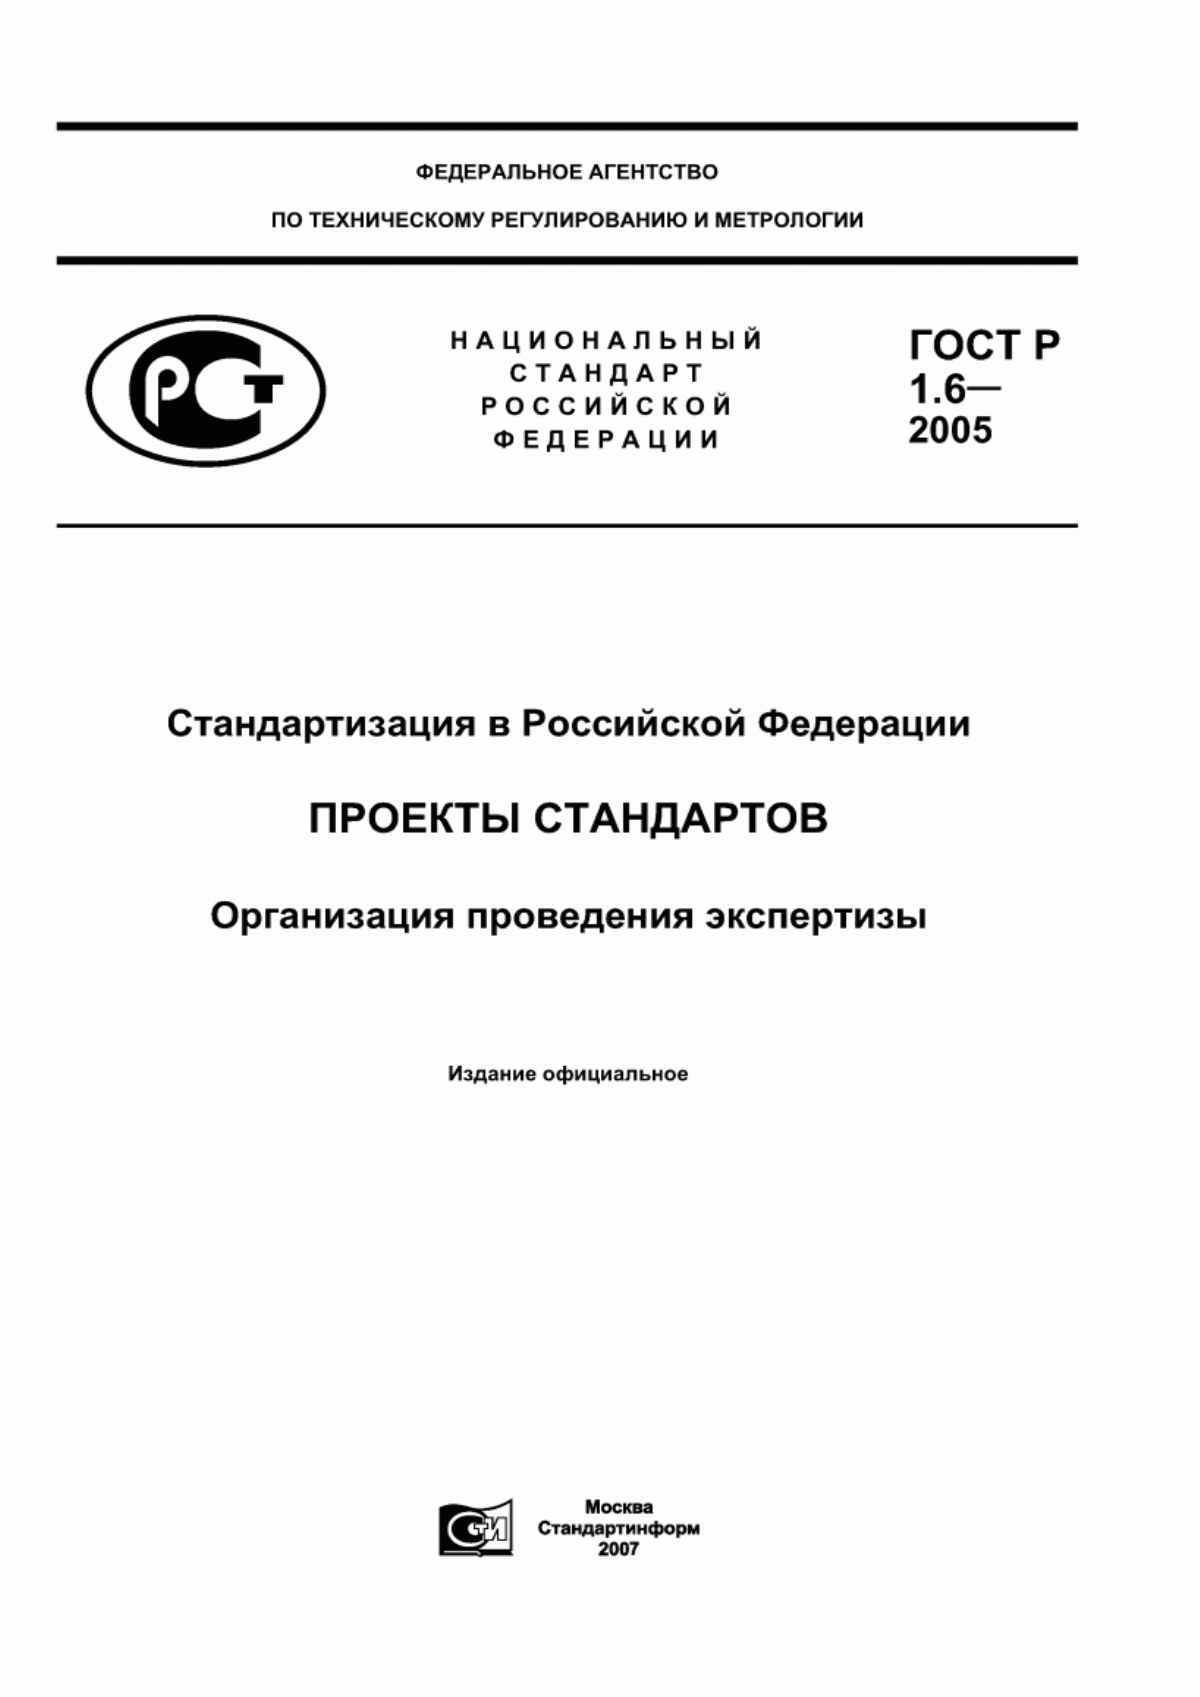 ГОСТ Р 1.6-2005 Стандартизация в Российской Федерации. Проекты стандартов. Организация проведения экспертизы